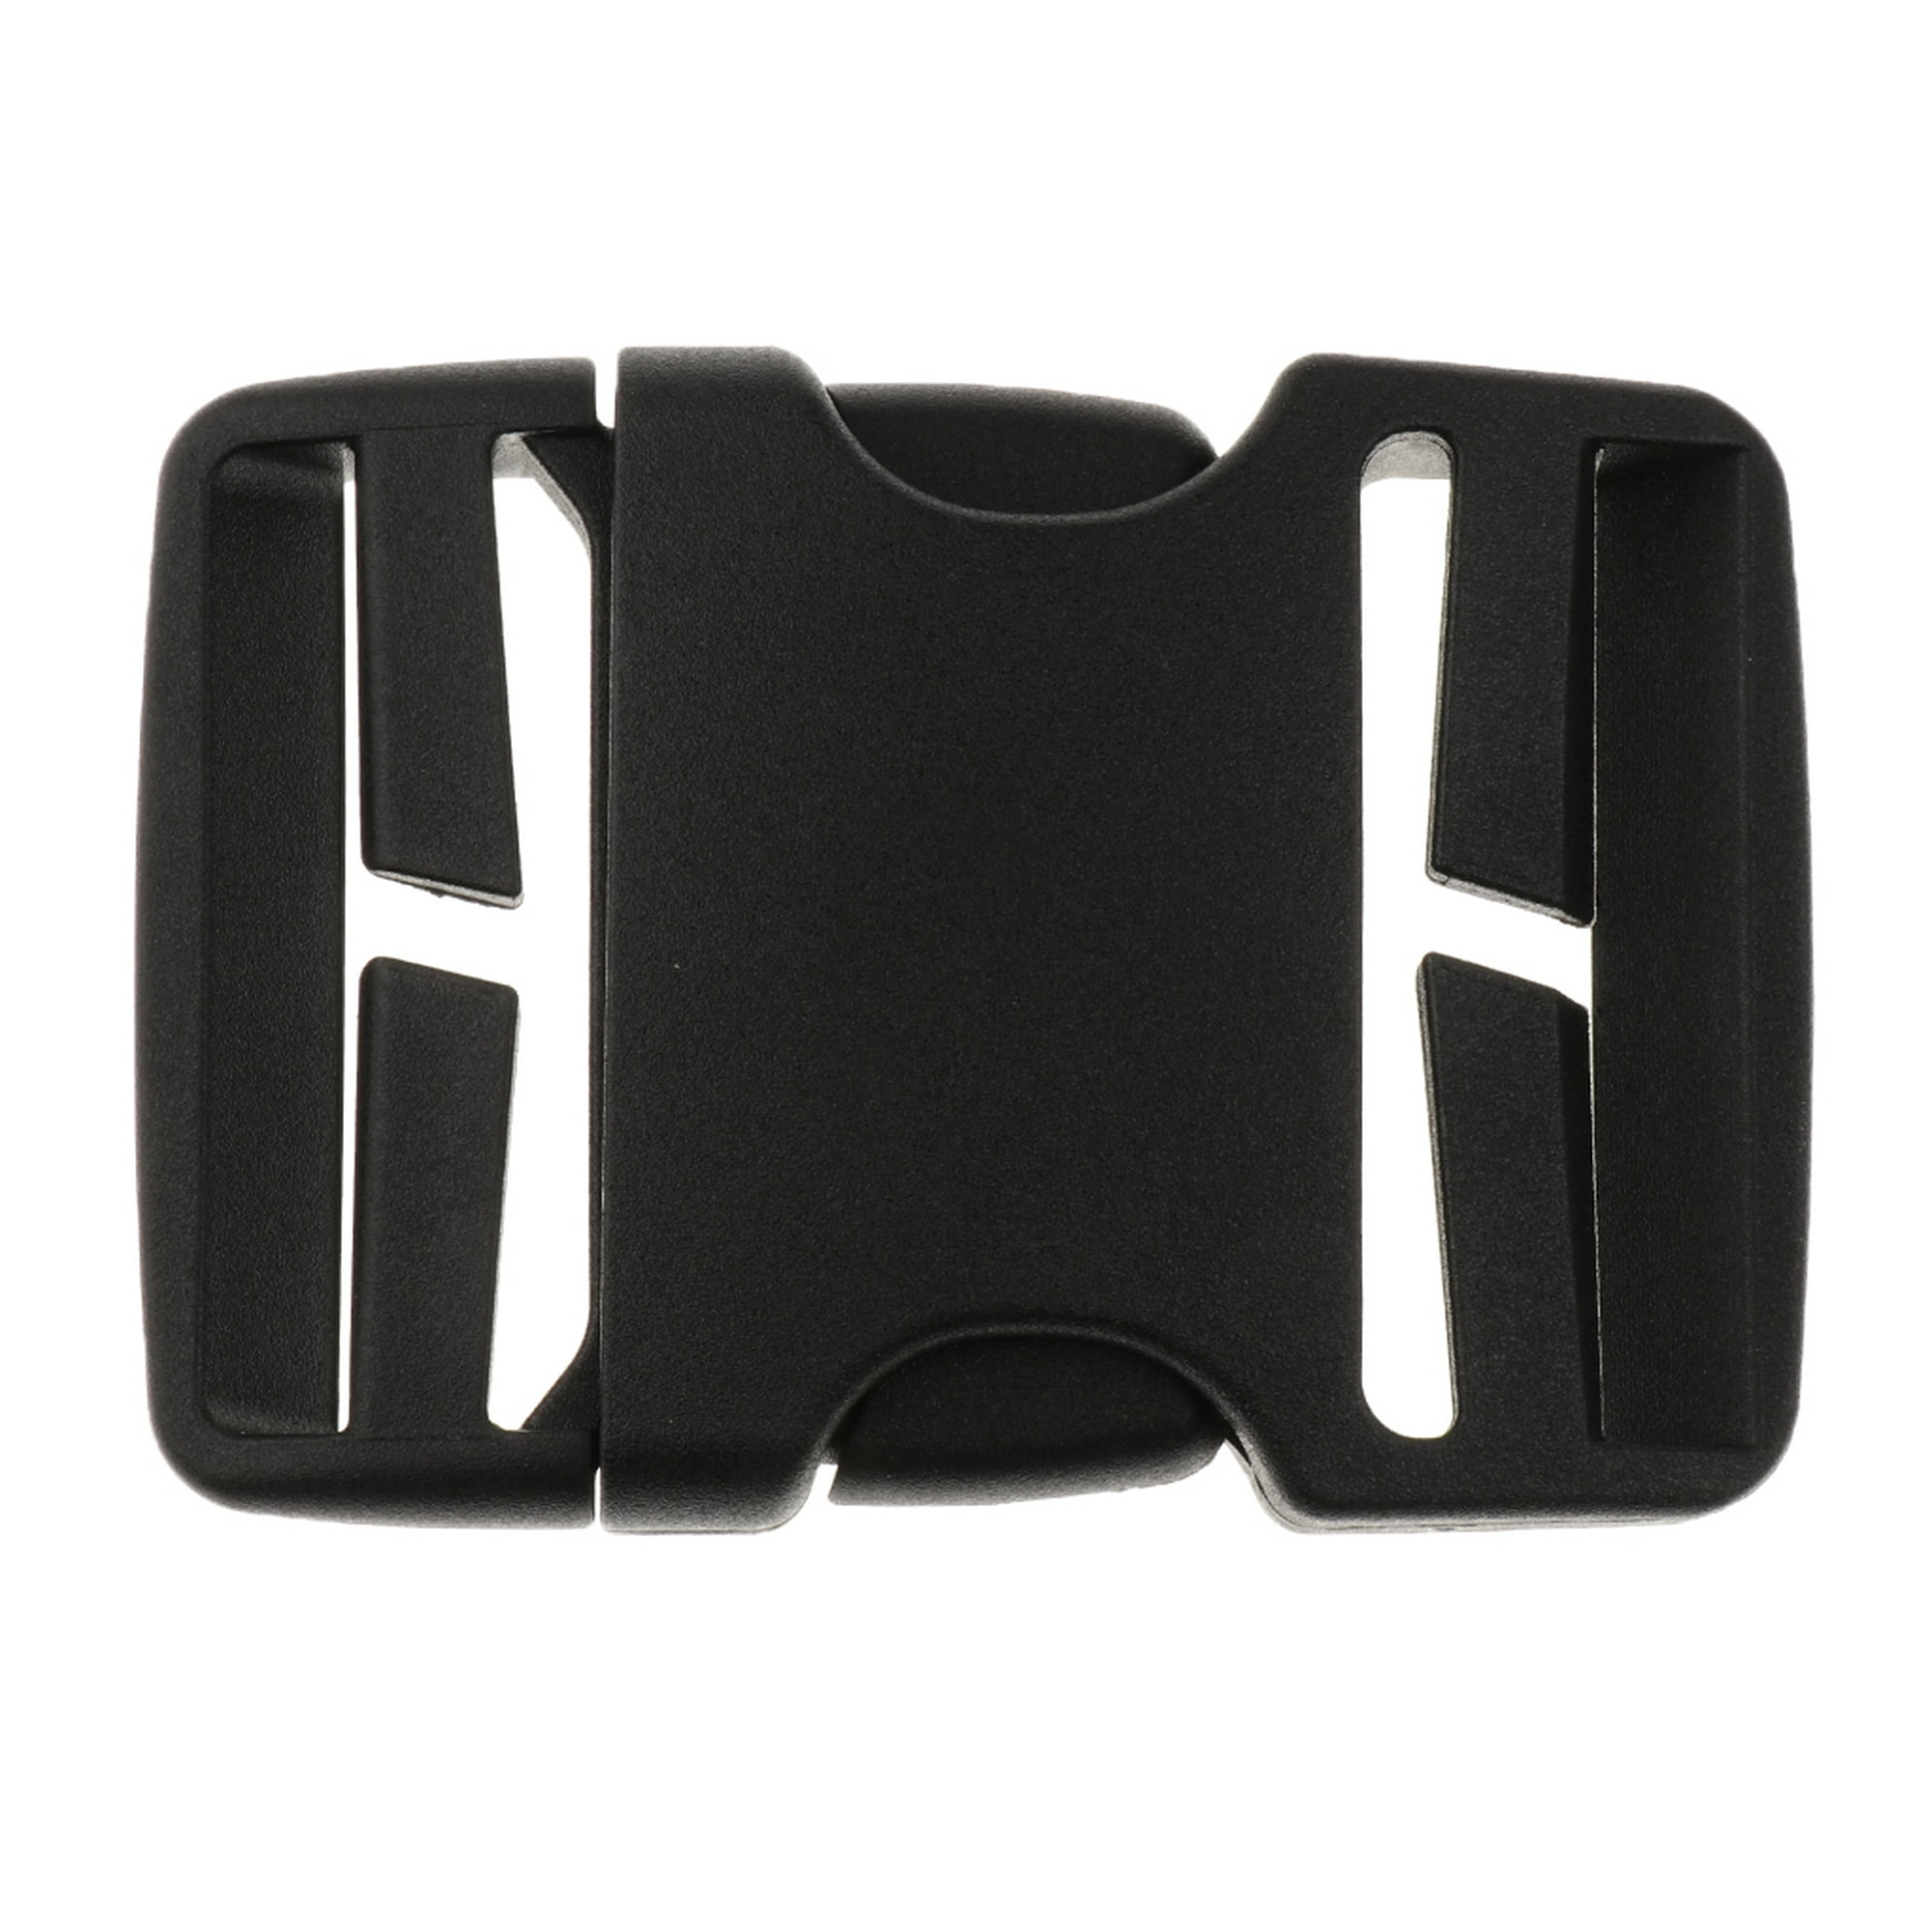 Hebillas laterales de plástico negro de 1 1/4 pulgadas – Disponible en  paquetes de 5, 10 y 20